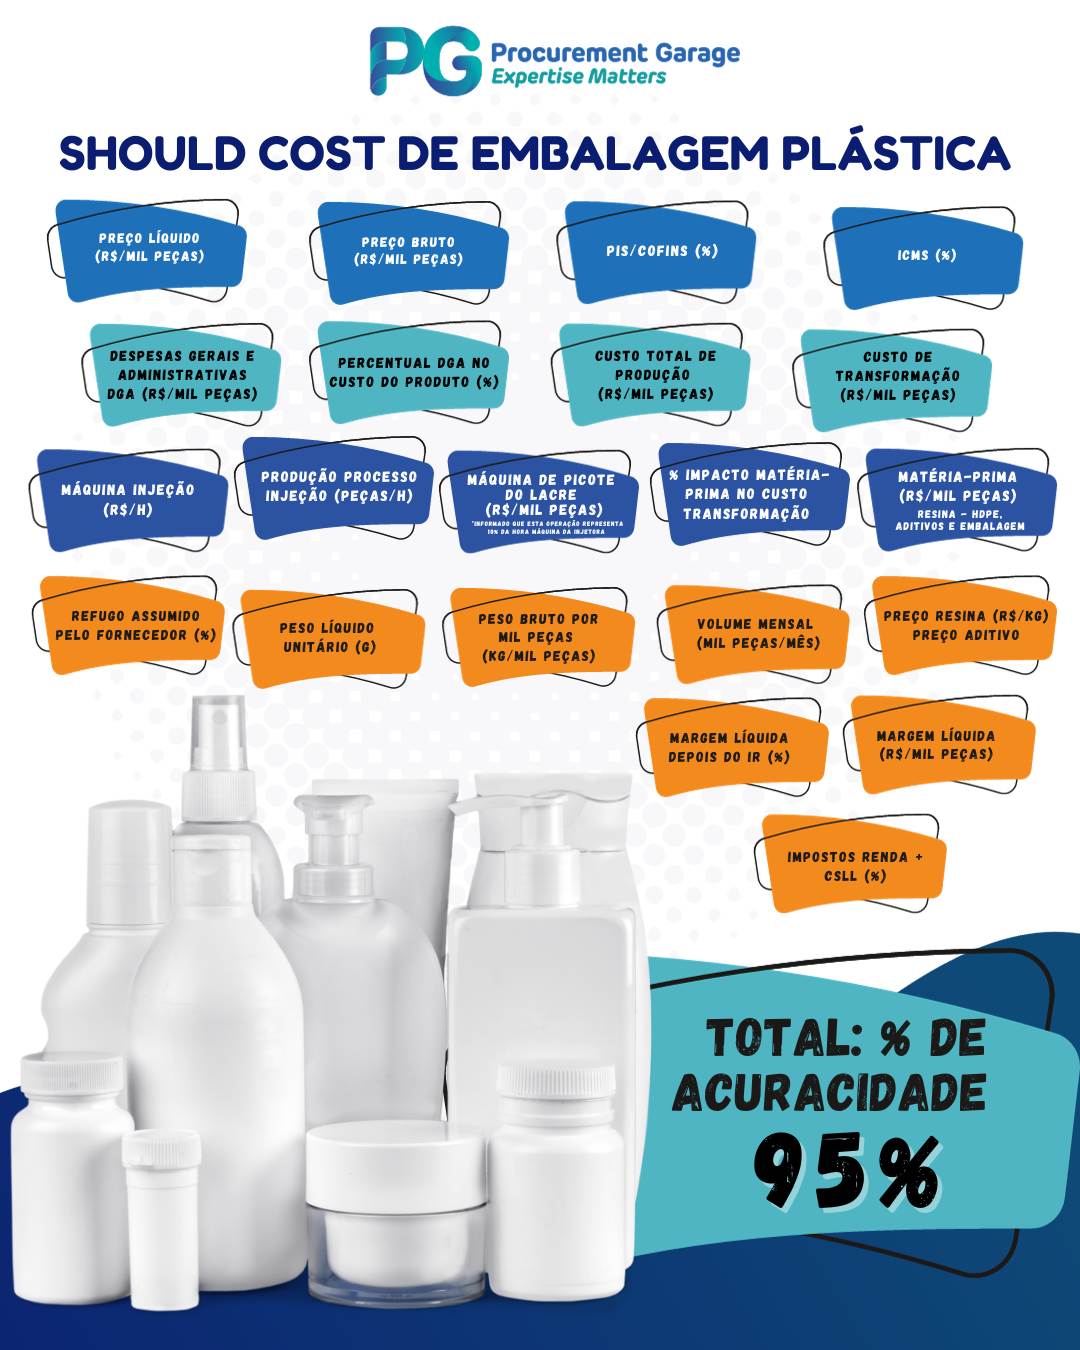 Should Cost de Embalagem Plastica - Blog Na Garage